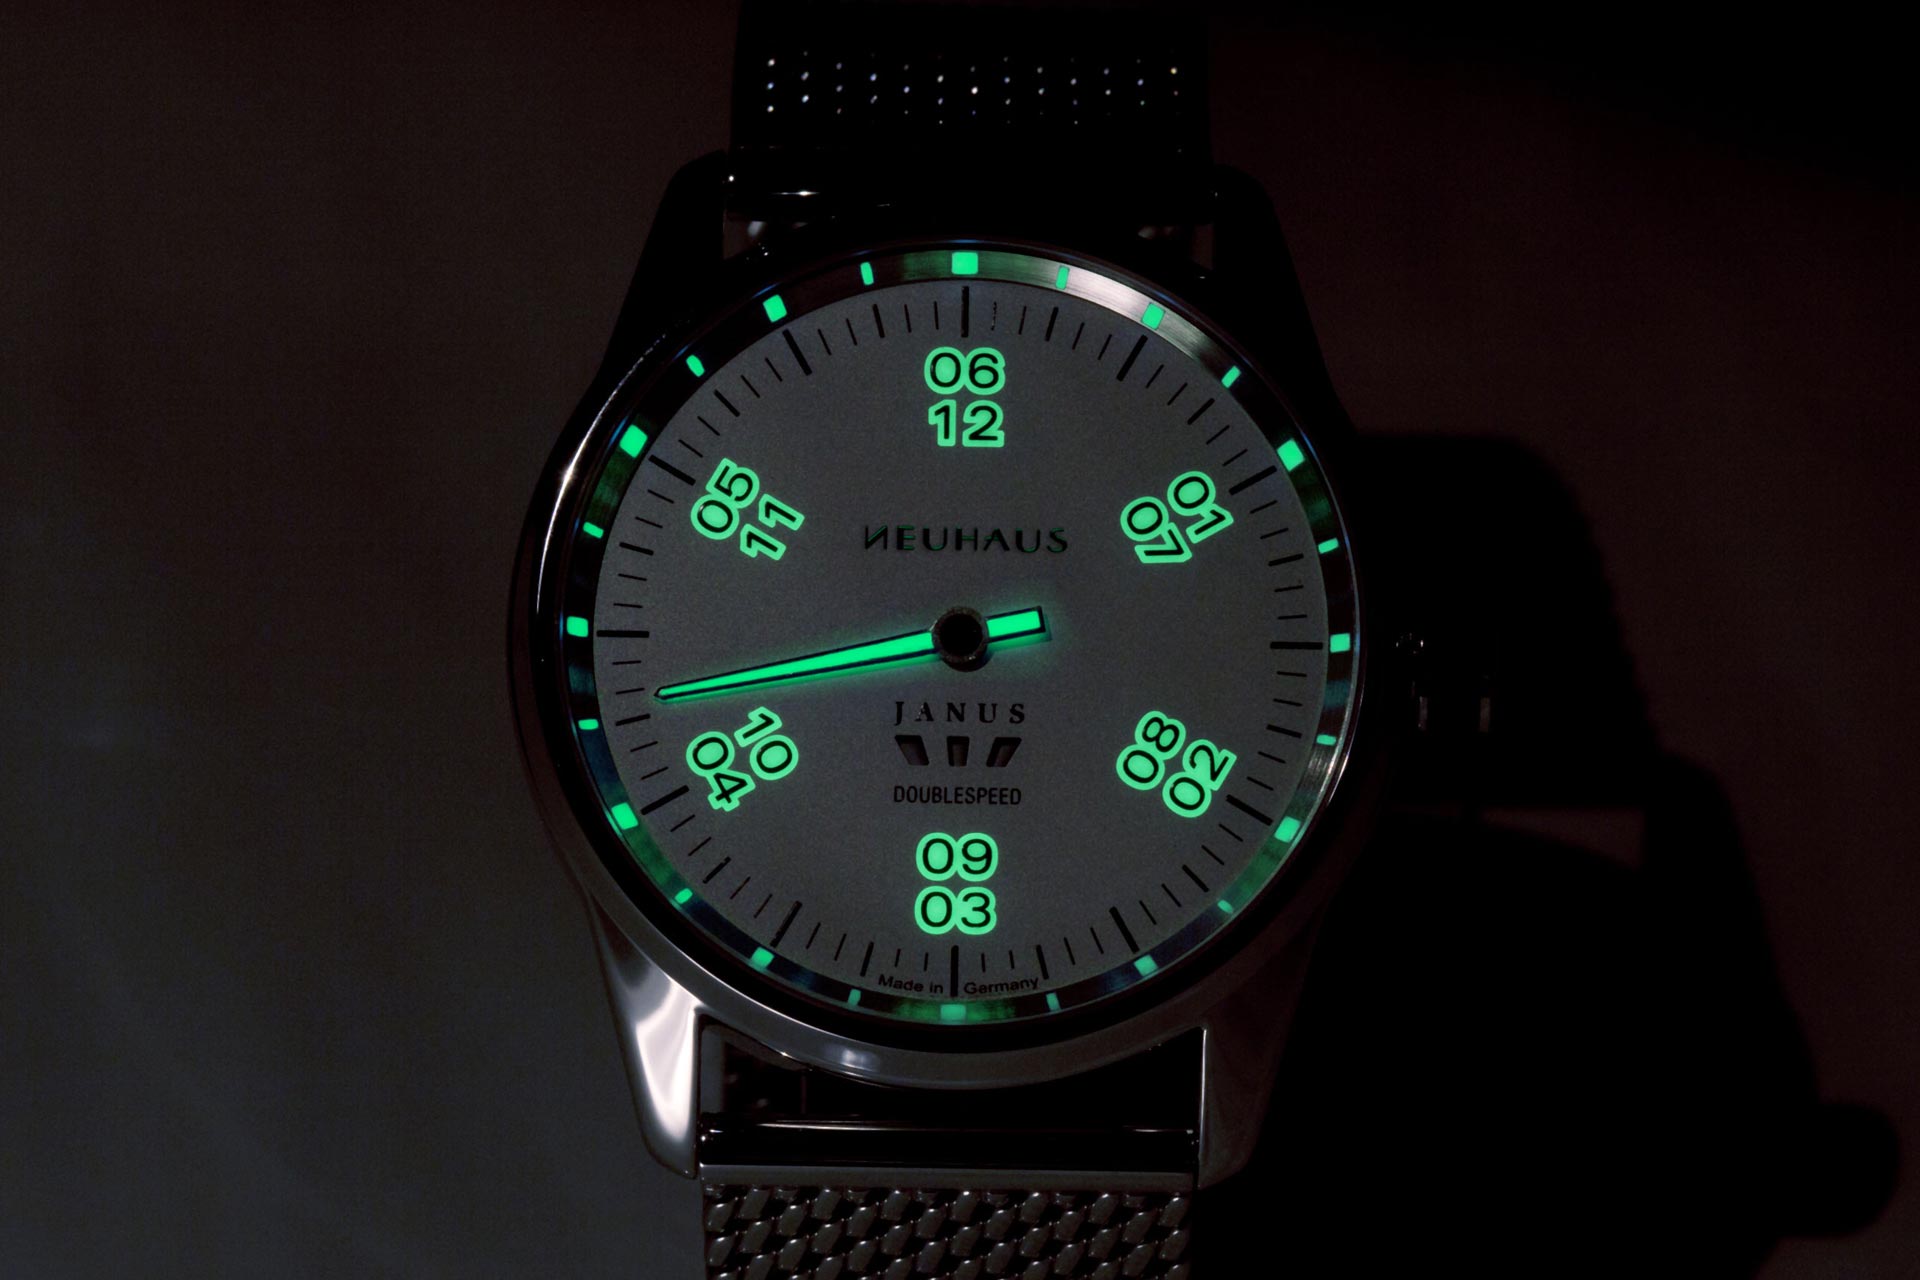 Einzeigeruhr von NEUHAUS Timepieces, Modell JANUS DoubleSpeed, silber leuchtend